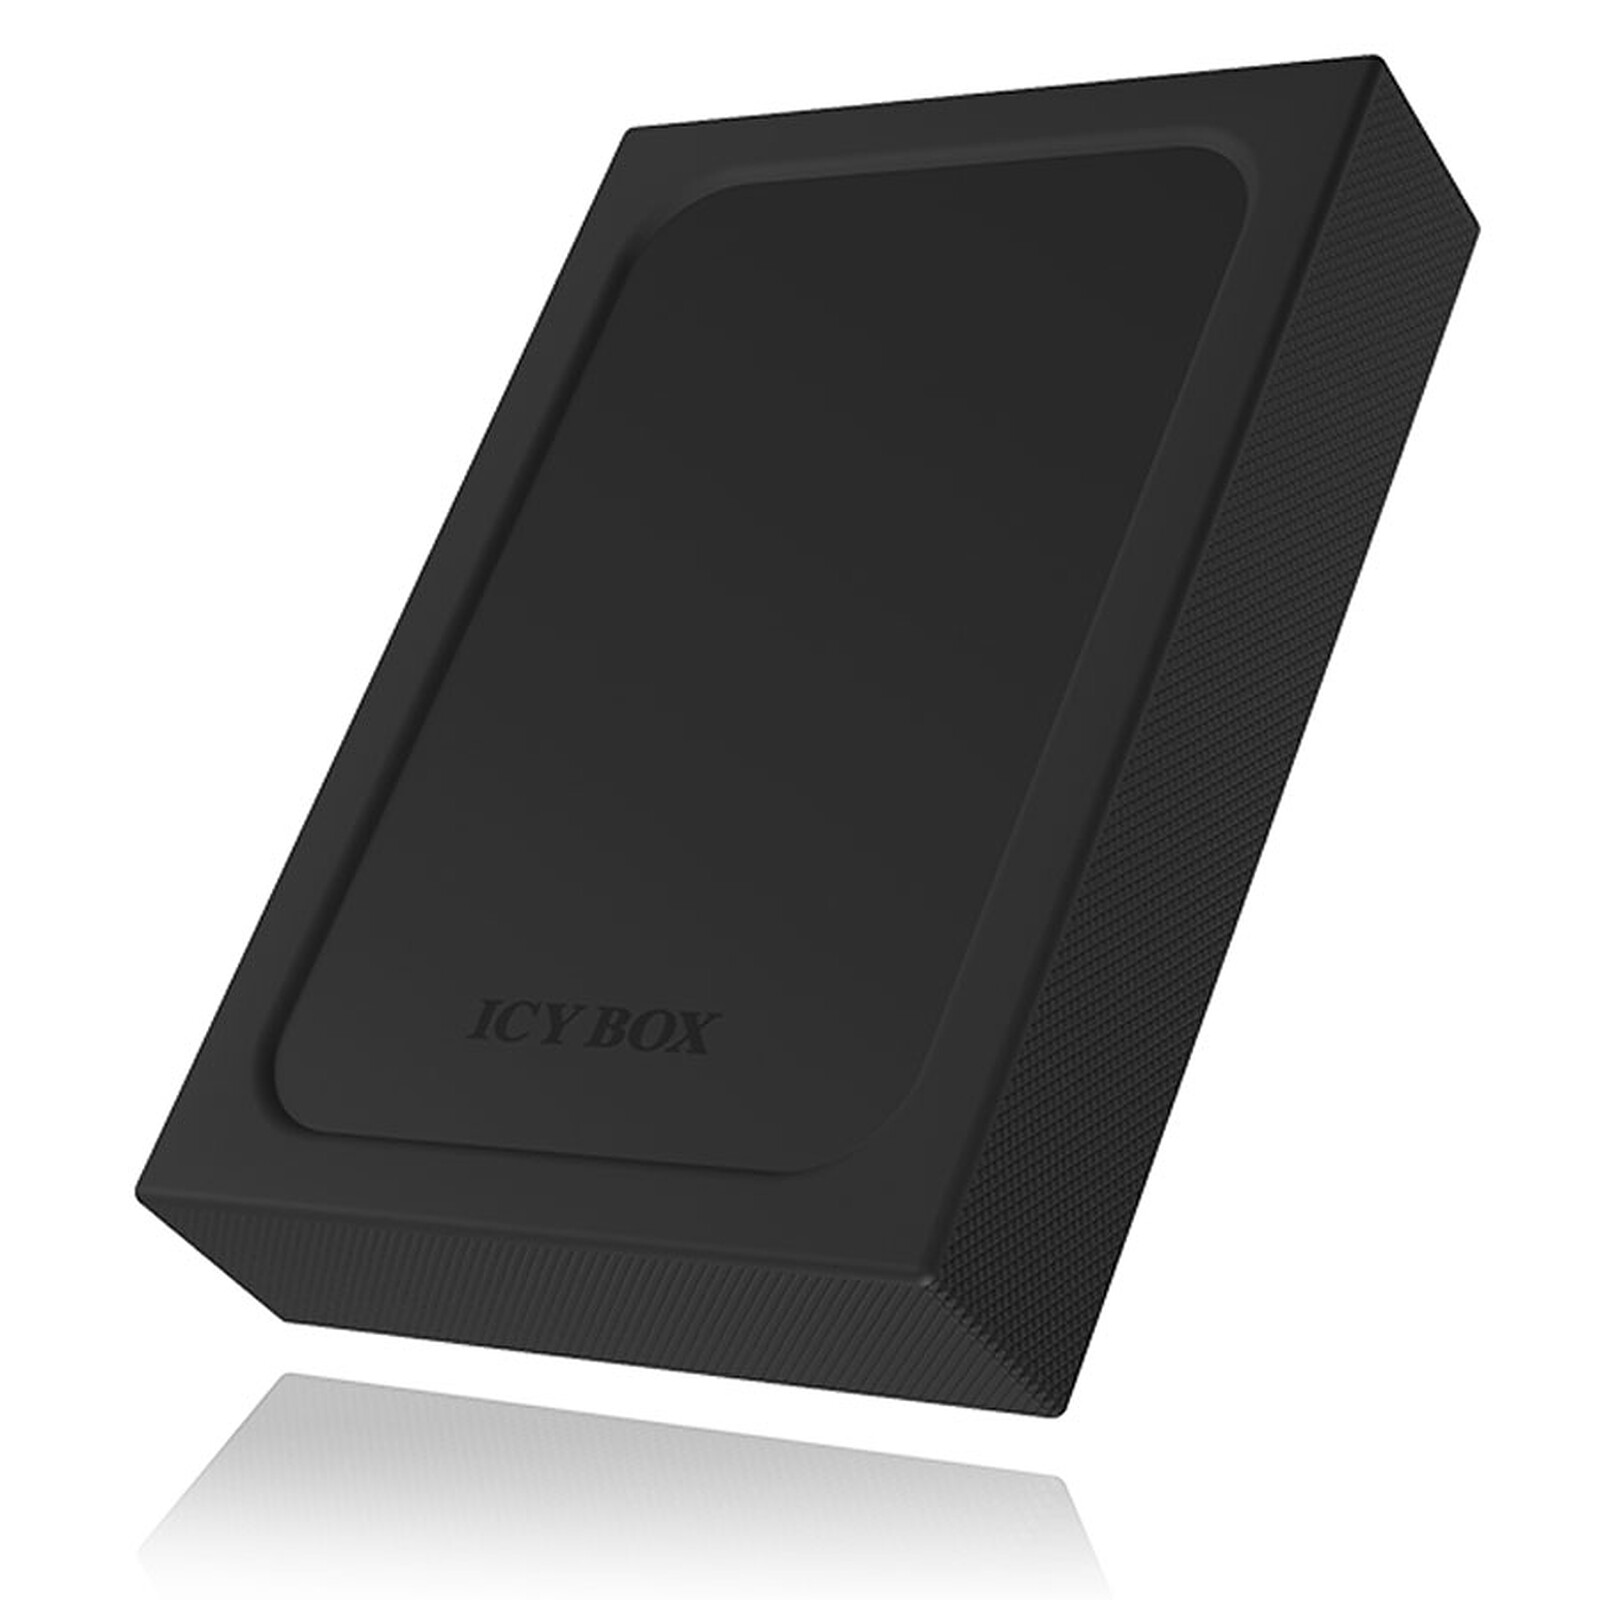 ICY BOX IB-M2HS-PS5 - Accessoires disque dur - Garantie 3 ans LDLC